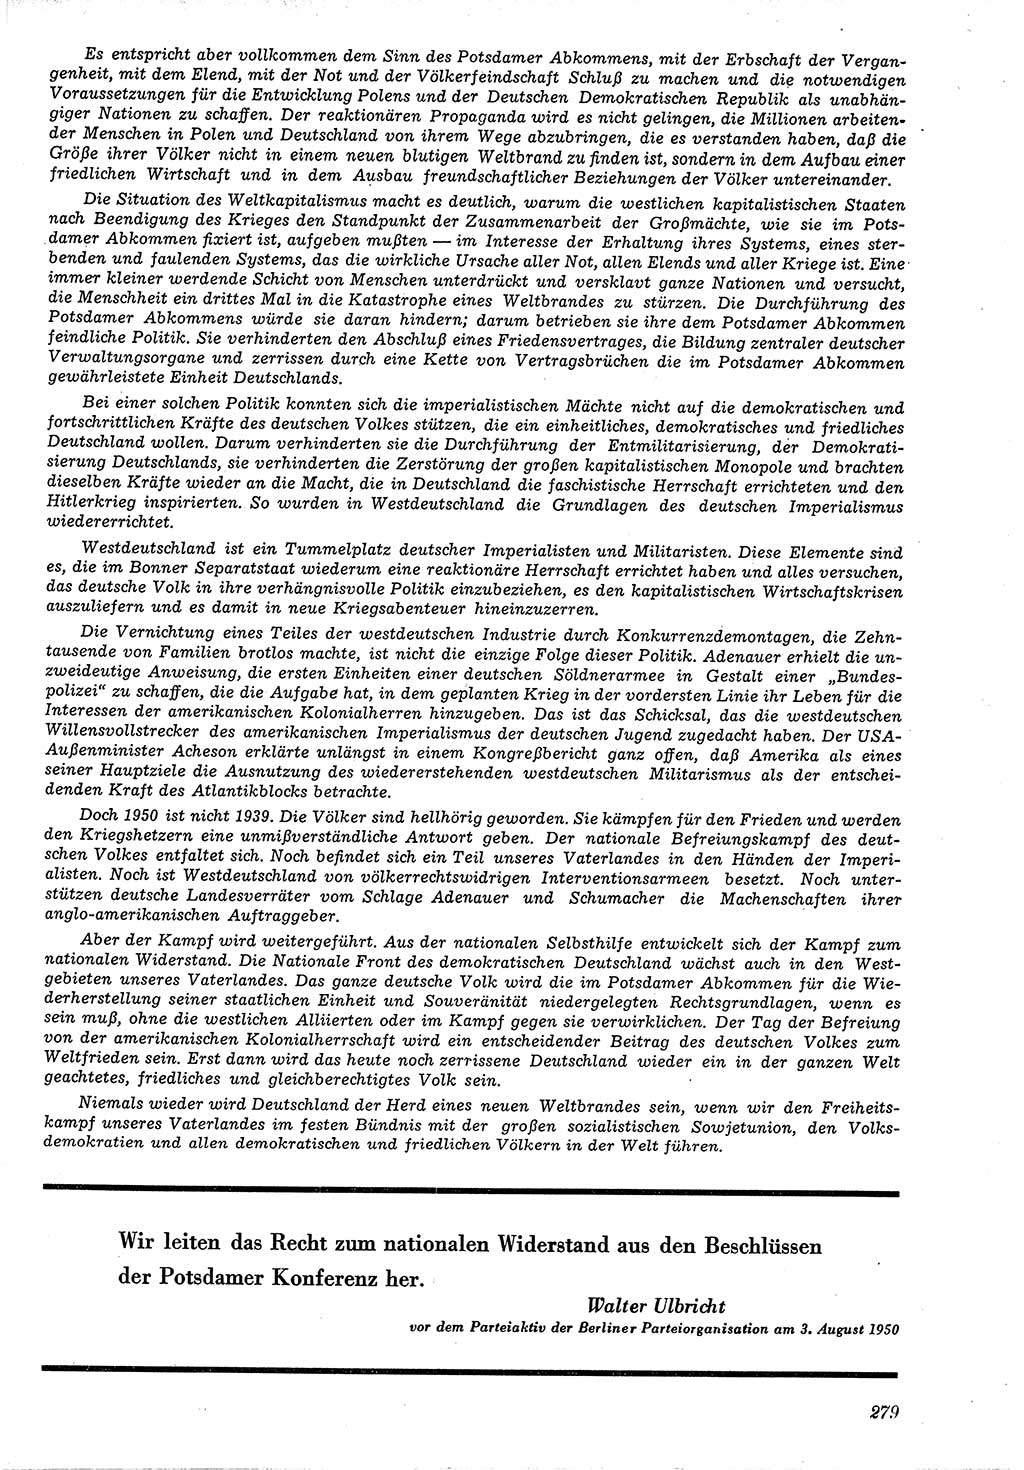 Neue Justiz (NJ), Zeitschrift für Recht und Rechtswissenschaft [Deutsche Demokratische Republik (DDR)], 4. Jahrgang 1950, Seite 279 (NJ DDR 1950, S. 279)